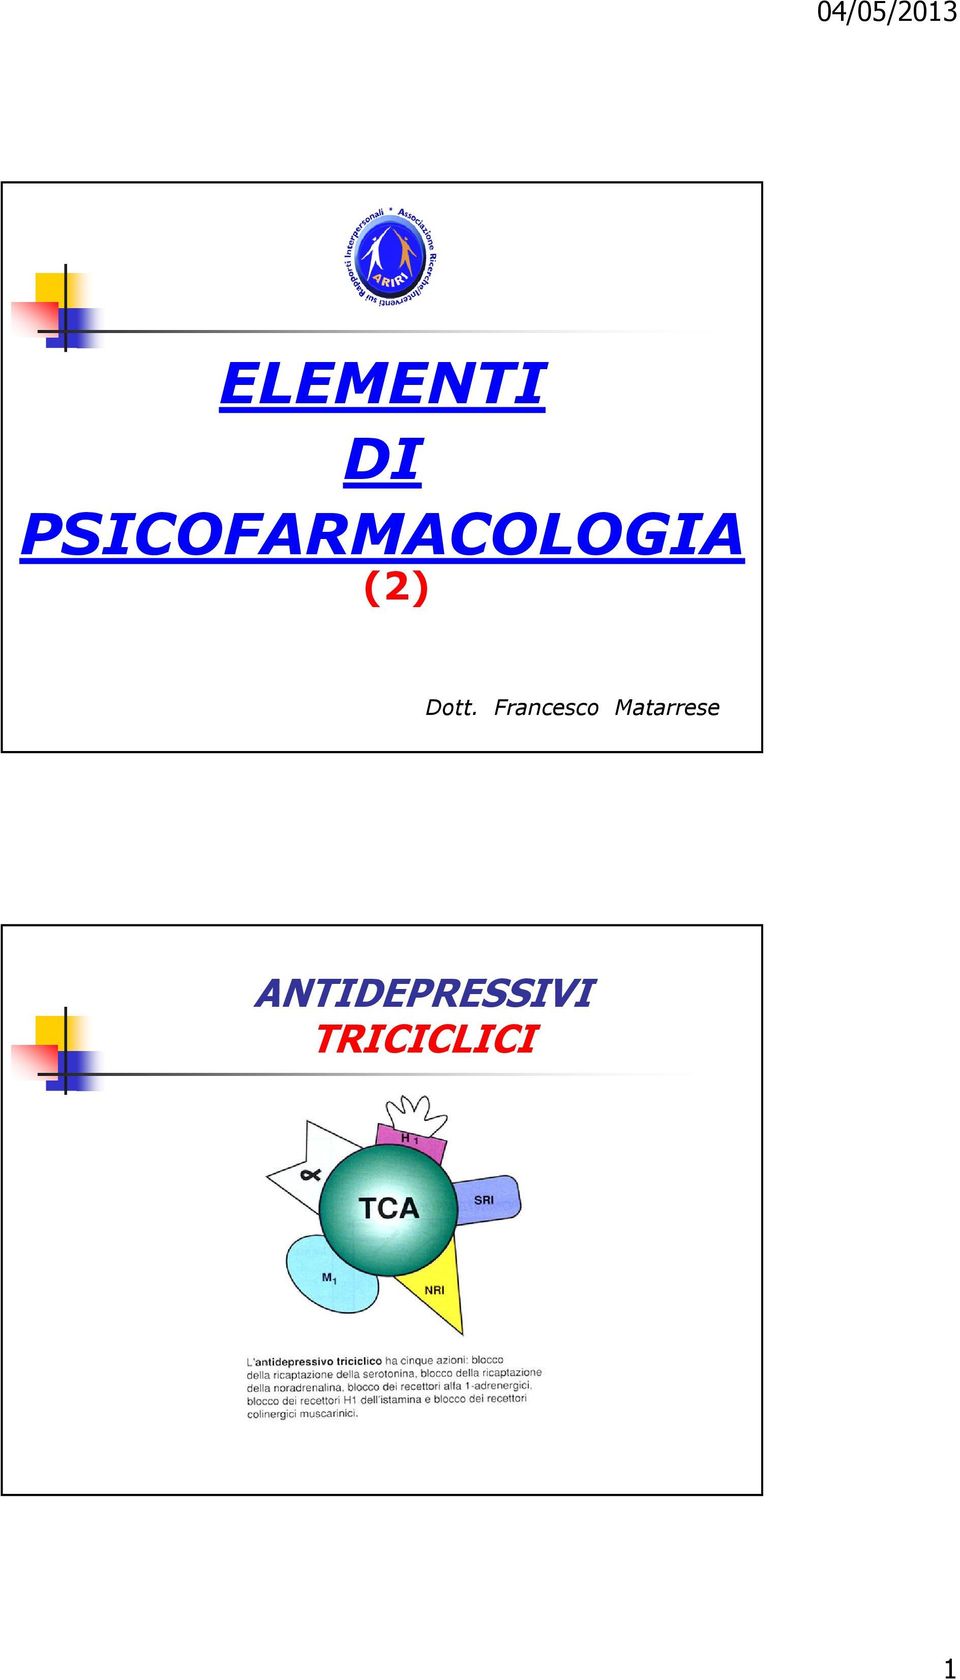 Dott. Francesco